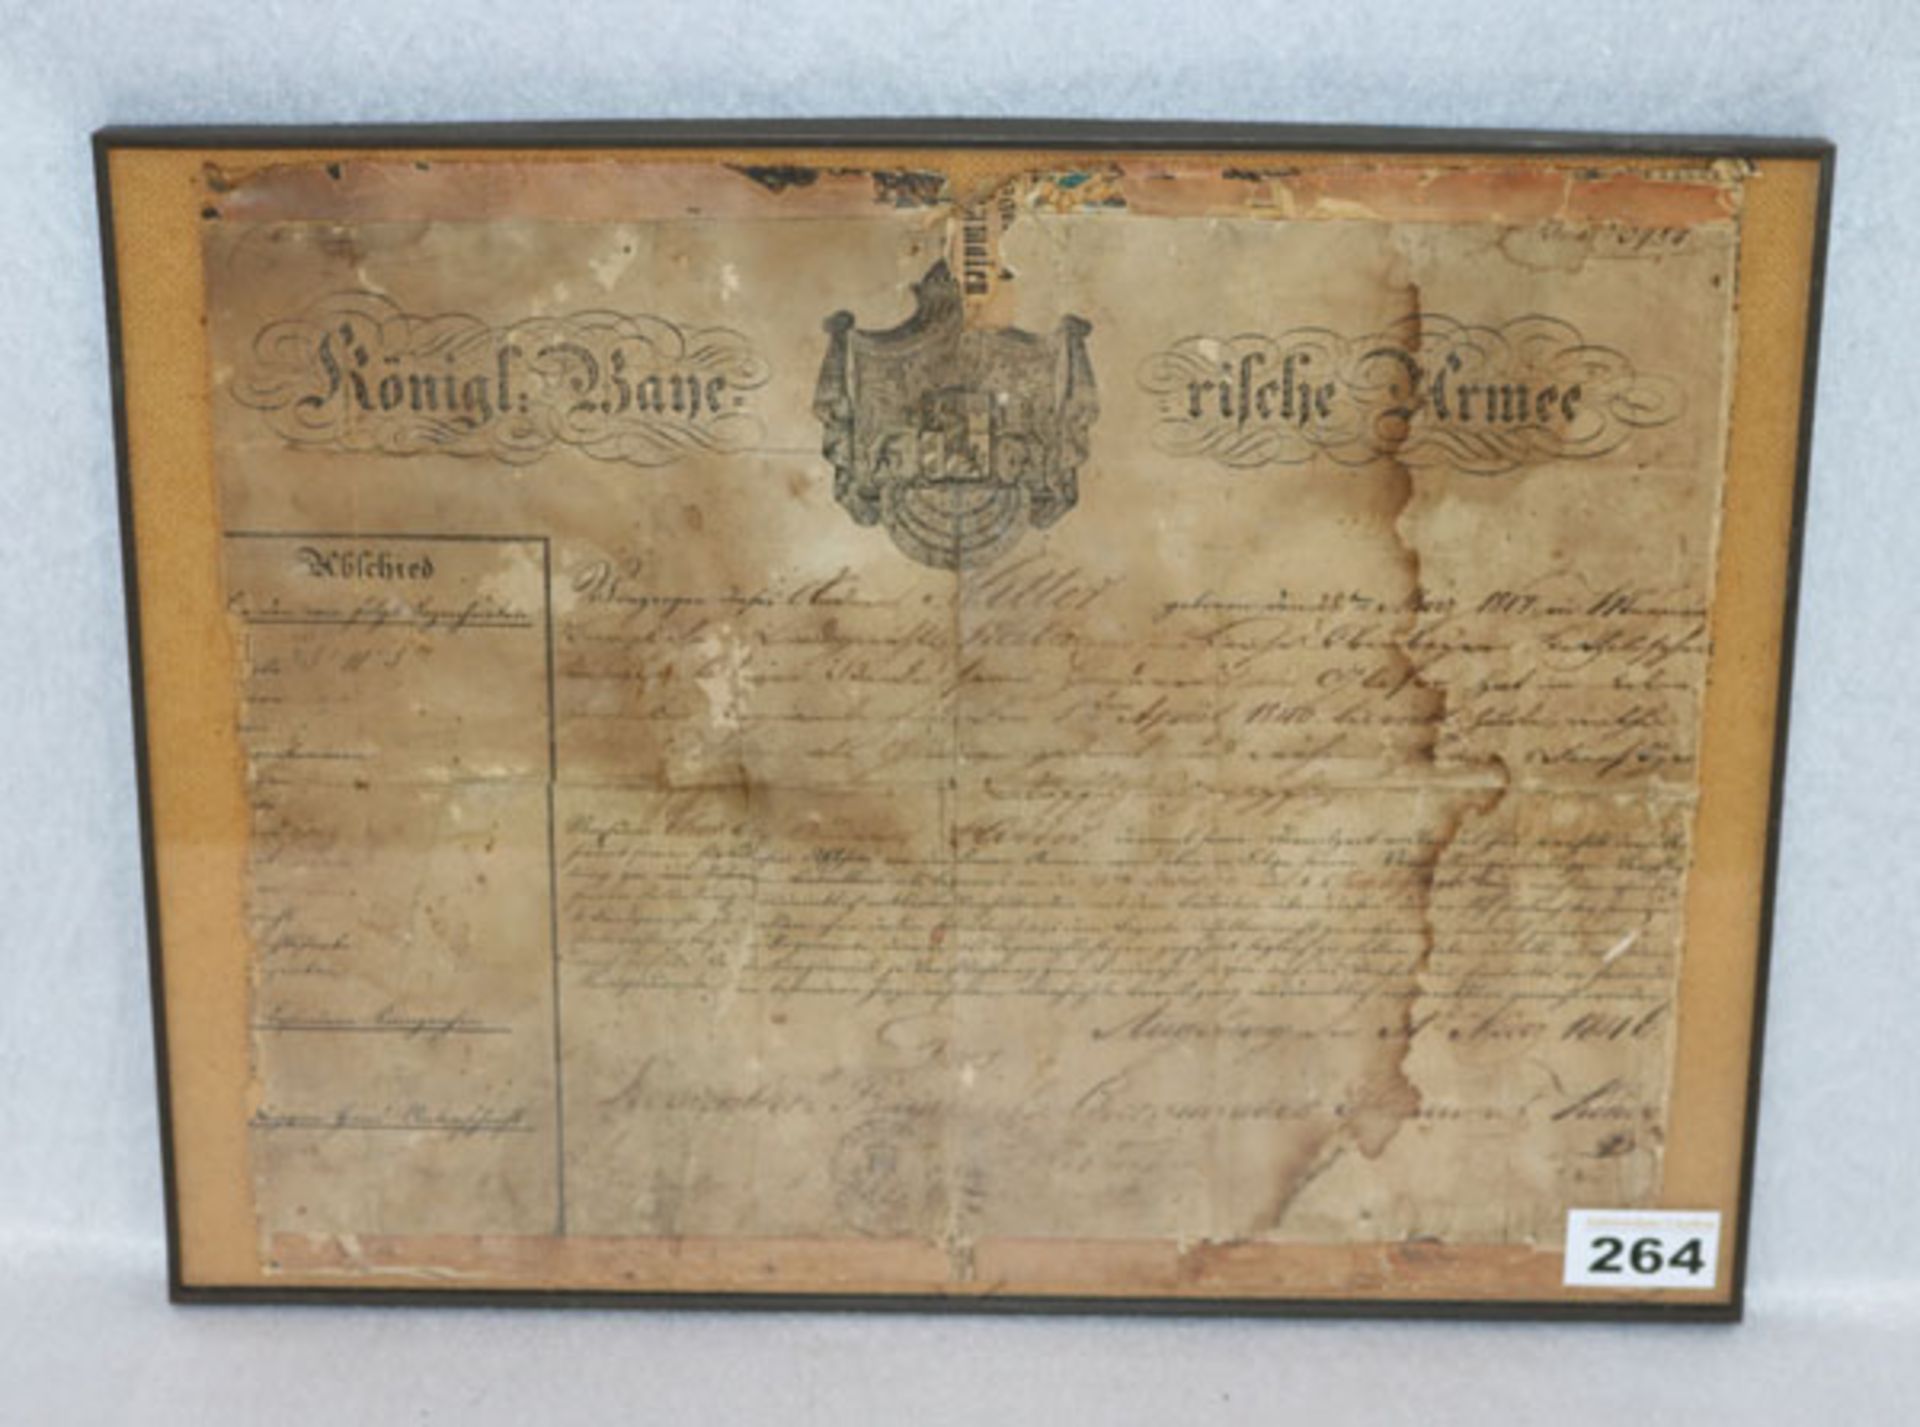 Urkunde, datiert 31. März 1846 Königl. Bayerische Armee, Papier stark beschädigt, unter Glas